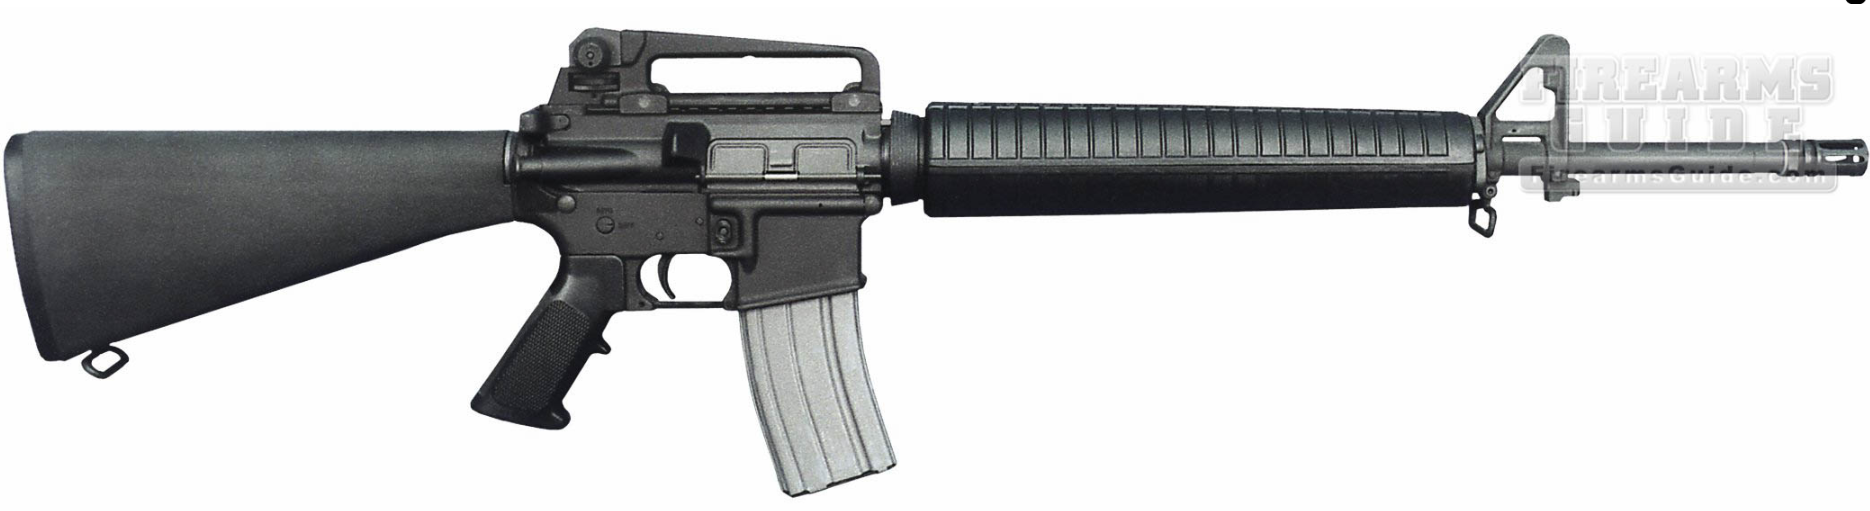 Bushmaster Target Model Rifle